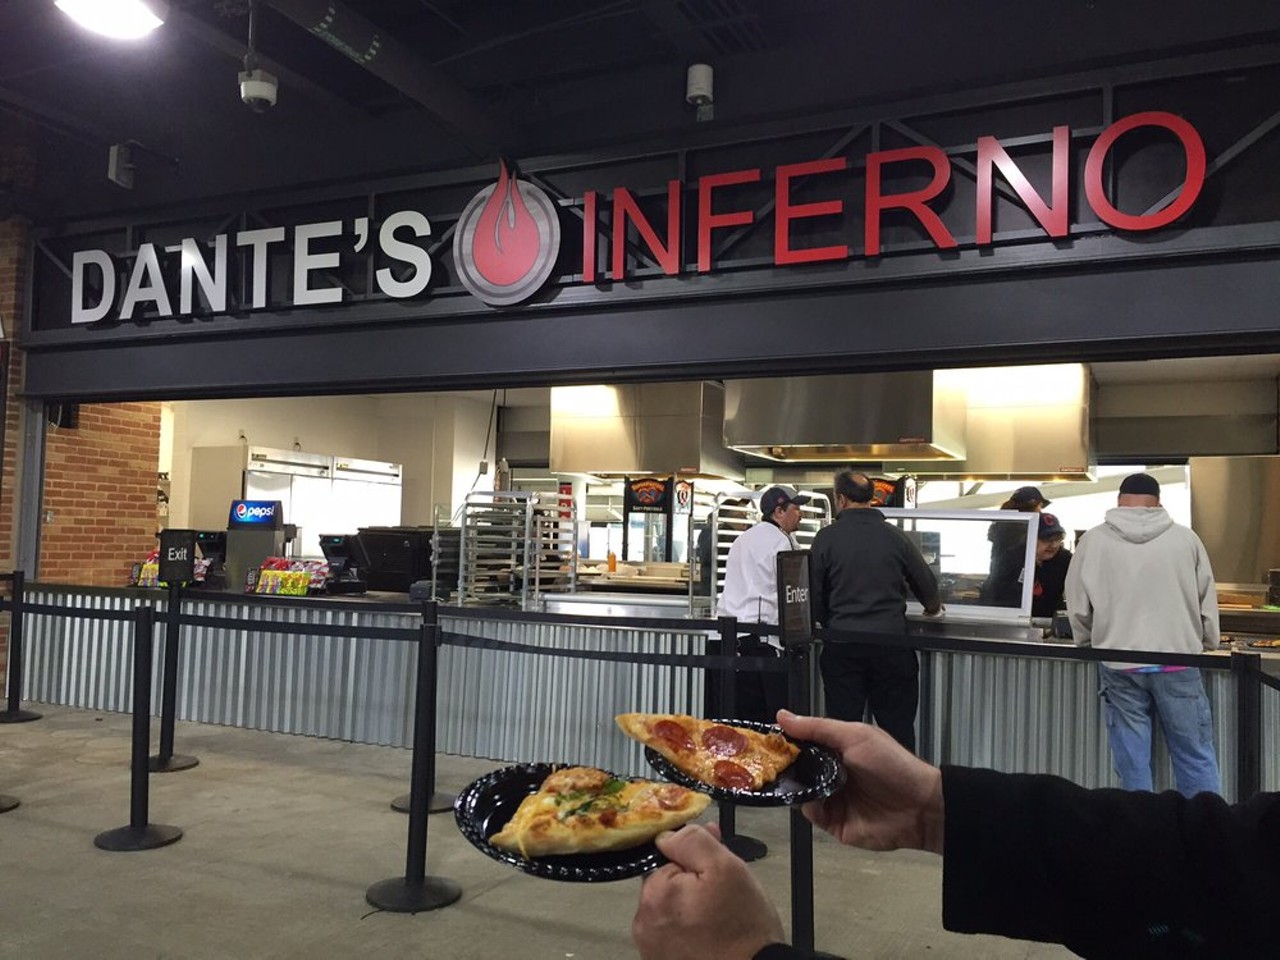 Dante's Inferno - Spaghetti and Meatballs Pizza and Pepperoni Pizza